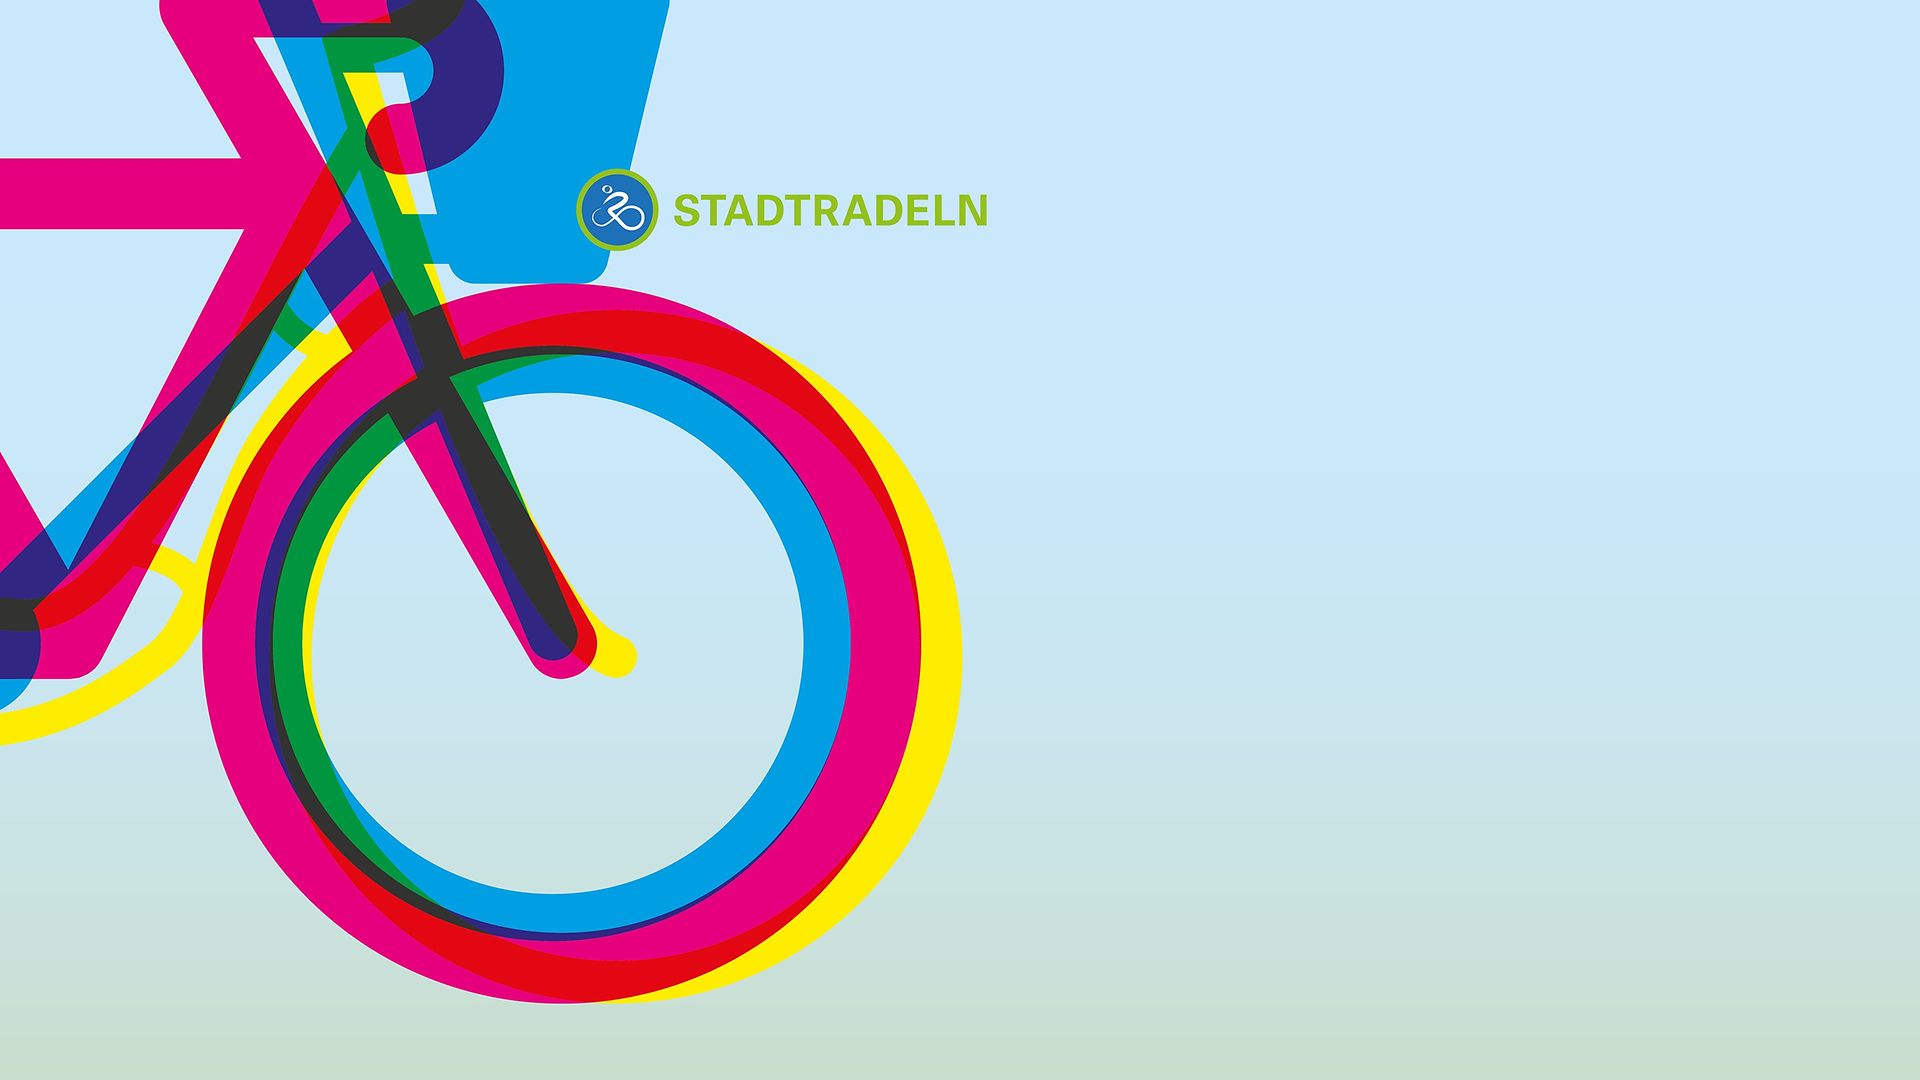  Umrisse von drei Fahrrädern und Logo "STADRADELN"